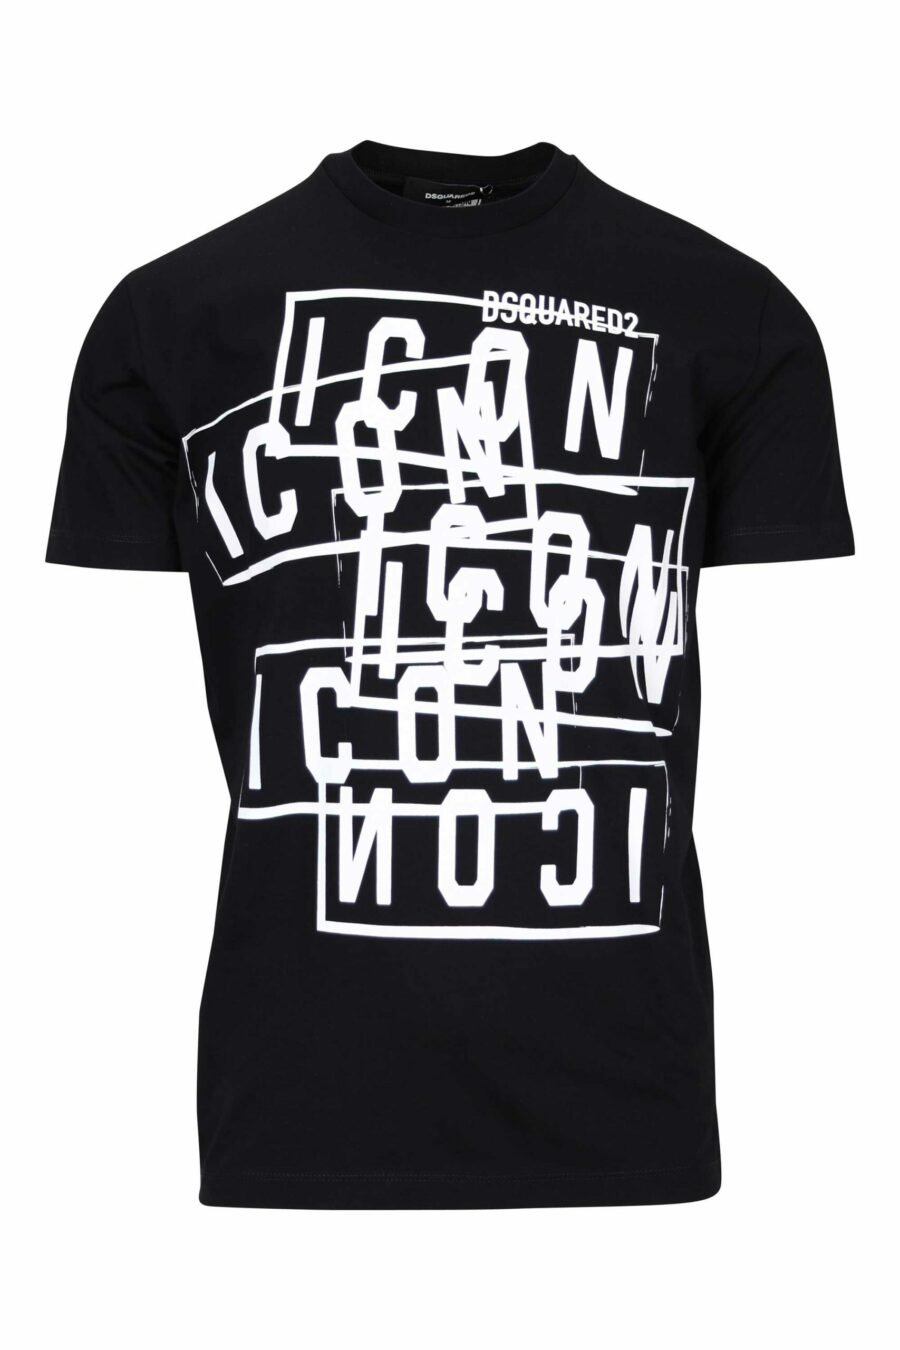 Schwarzes T-Shirt mit "Icon"-Logo-Stempeln - 8054148362744 skaliert